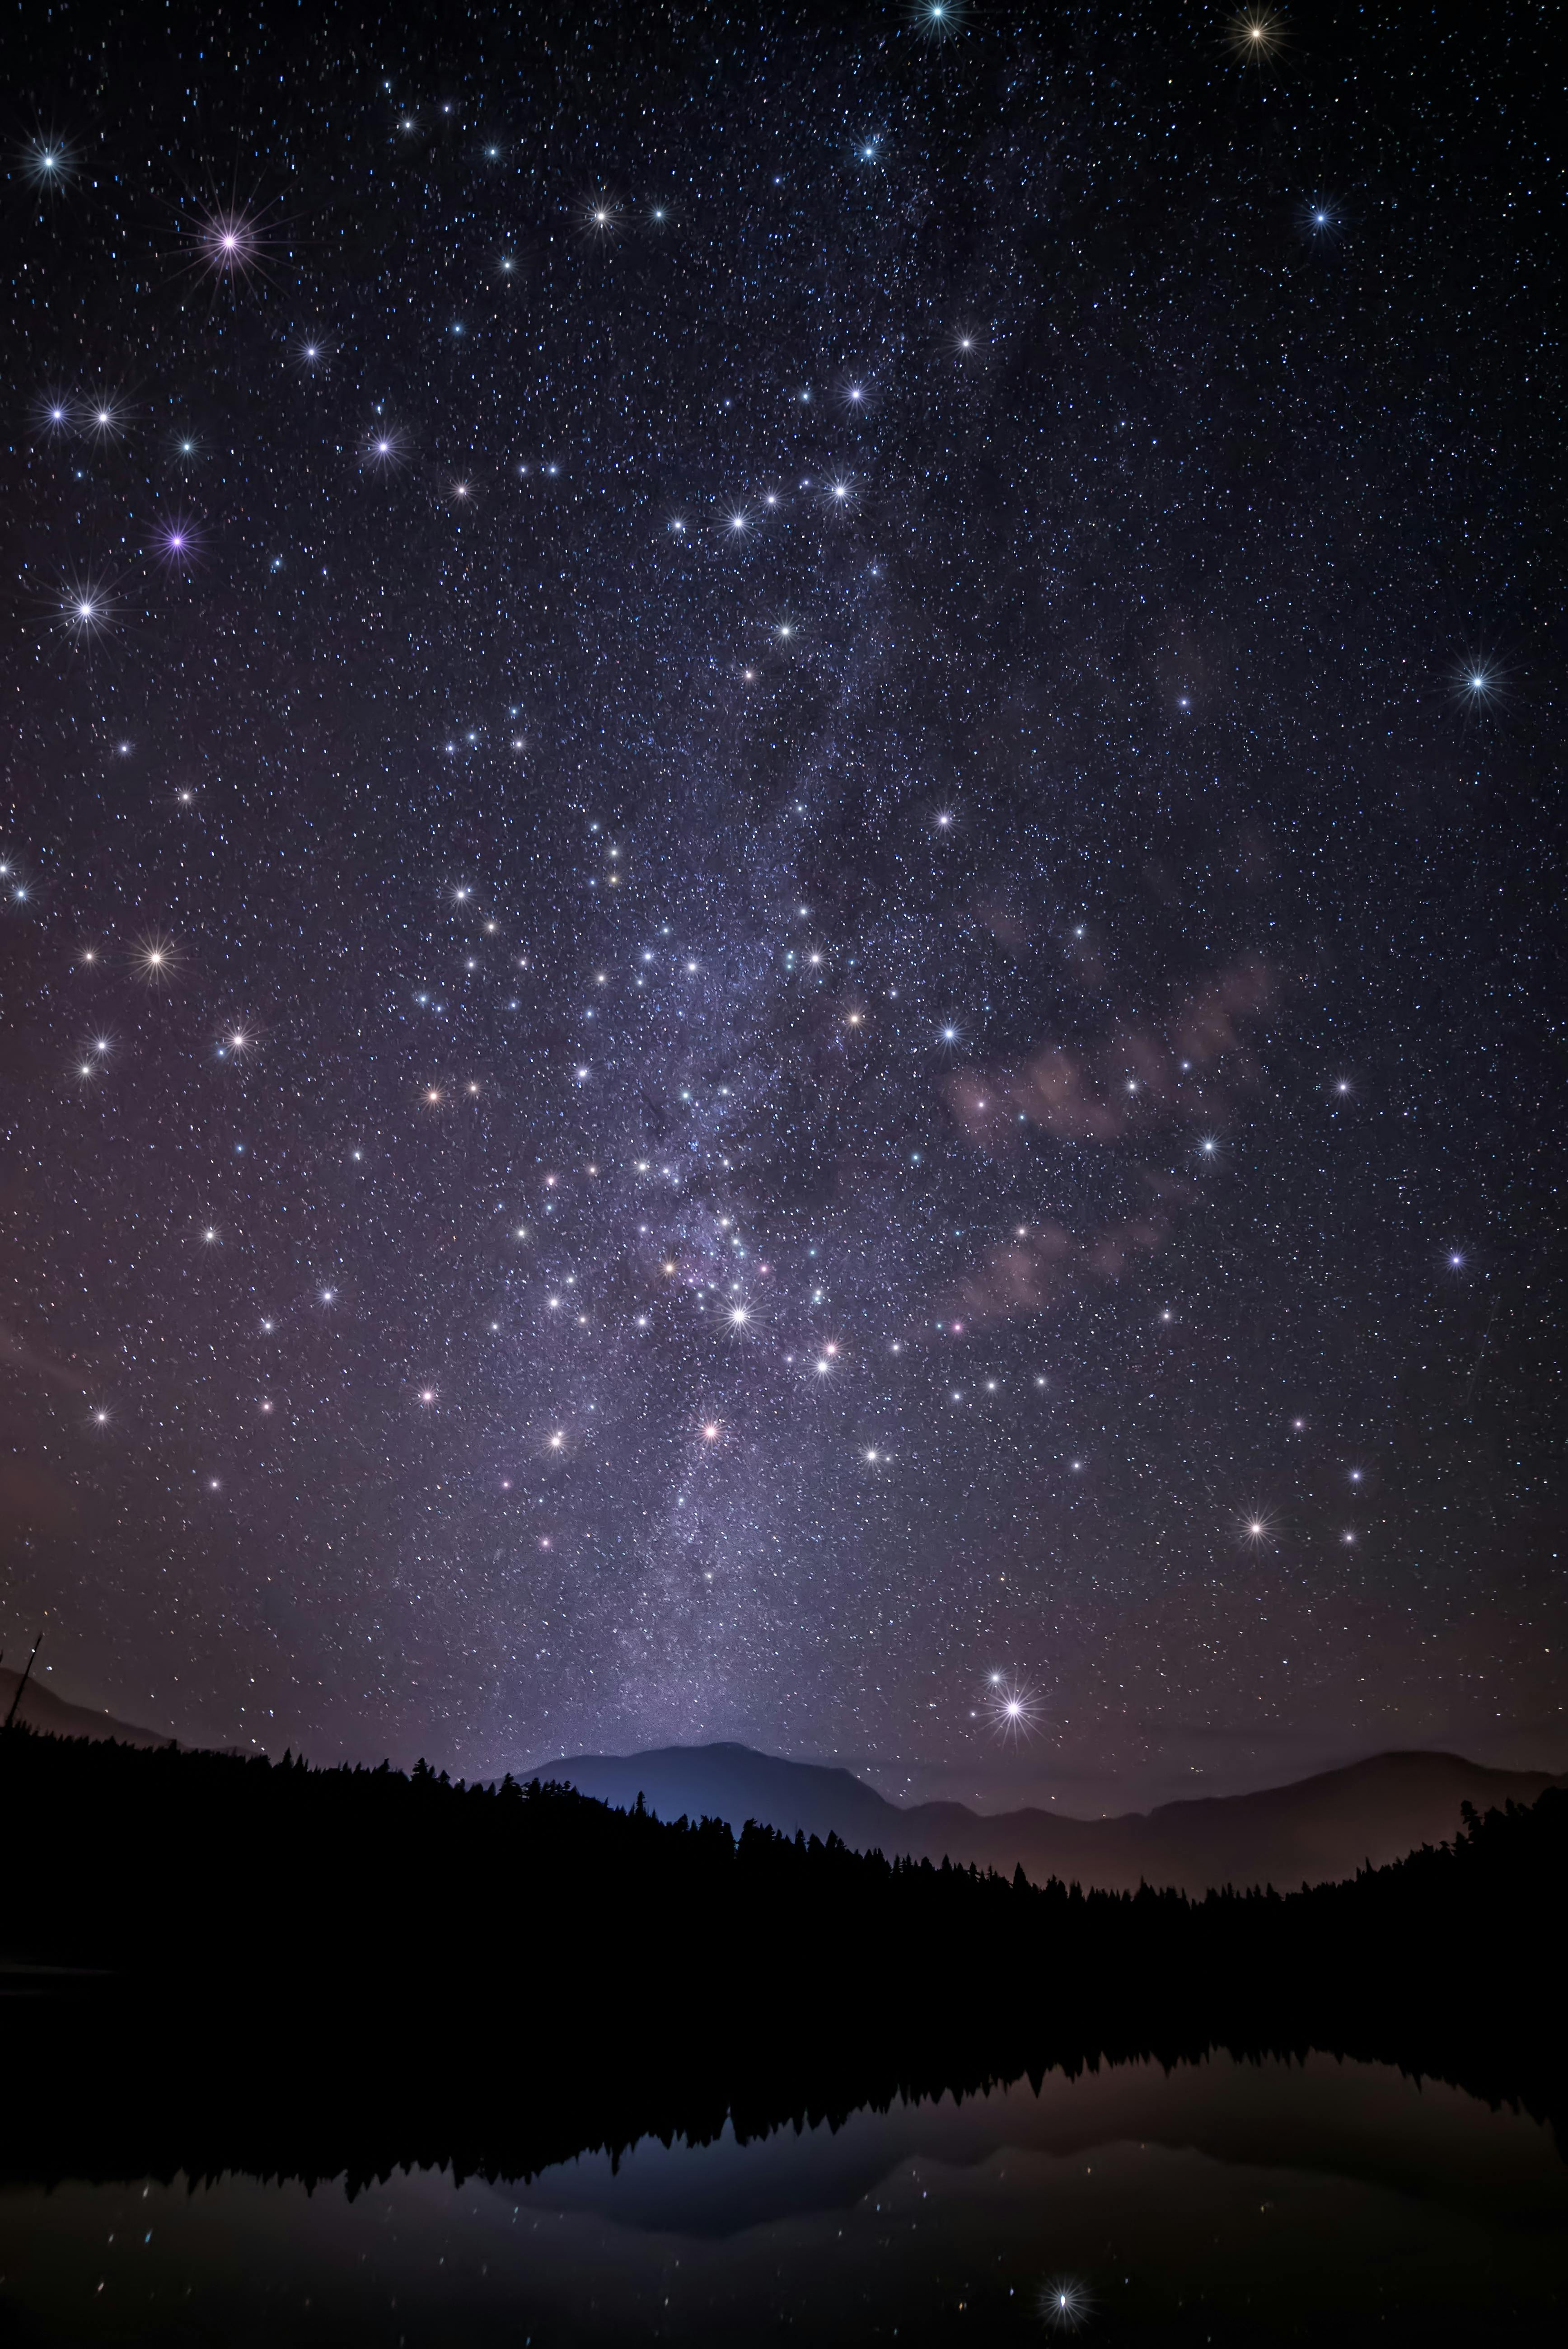 1000+ Engaging Night Sky Photos · Pexels · Free Stock Photos